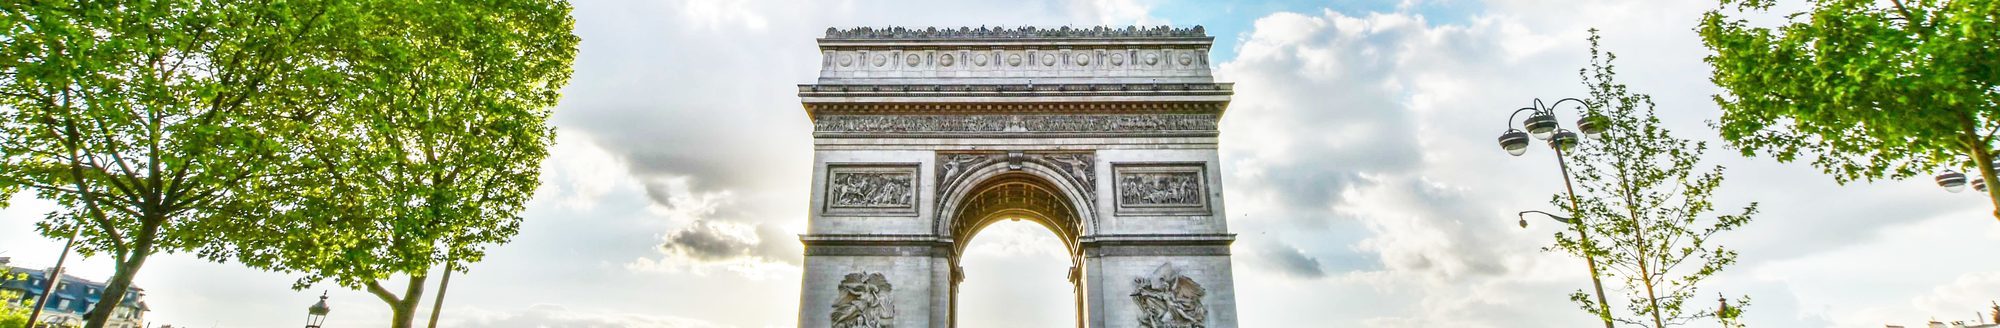 Paris: Avenue des Champs-Élysées - Arc de Triomphe de l'Ét…